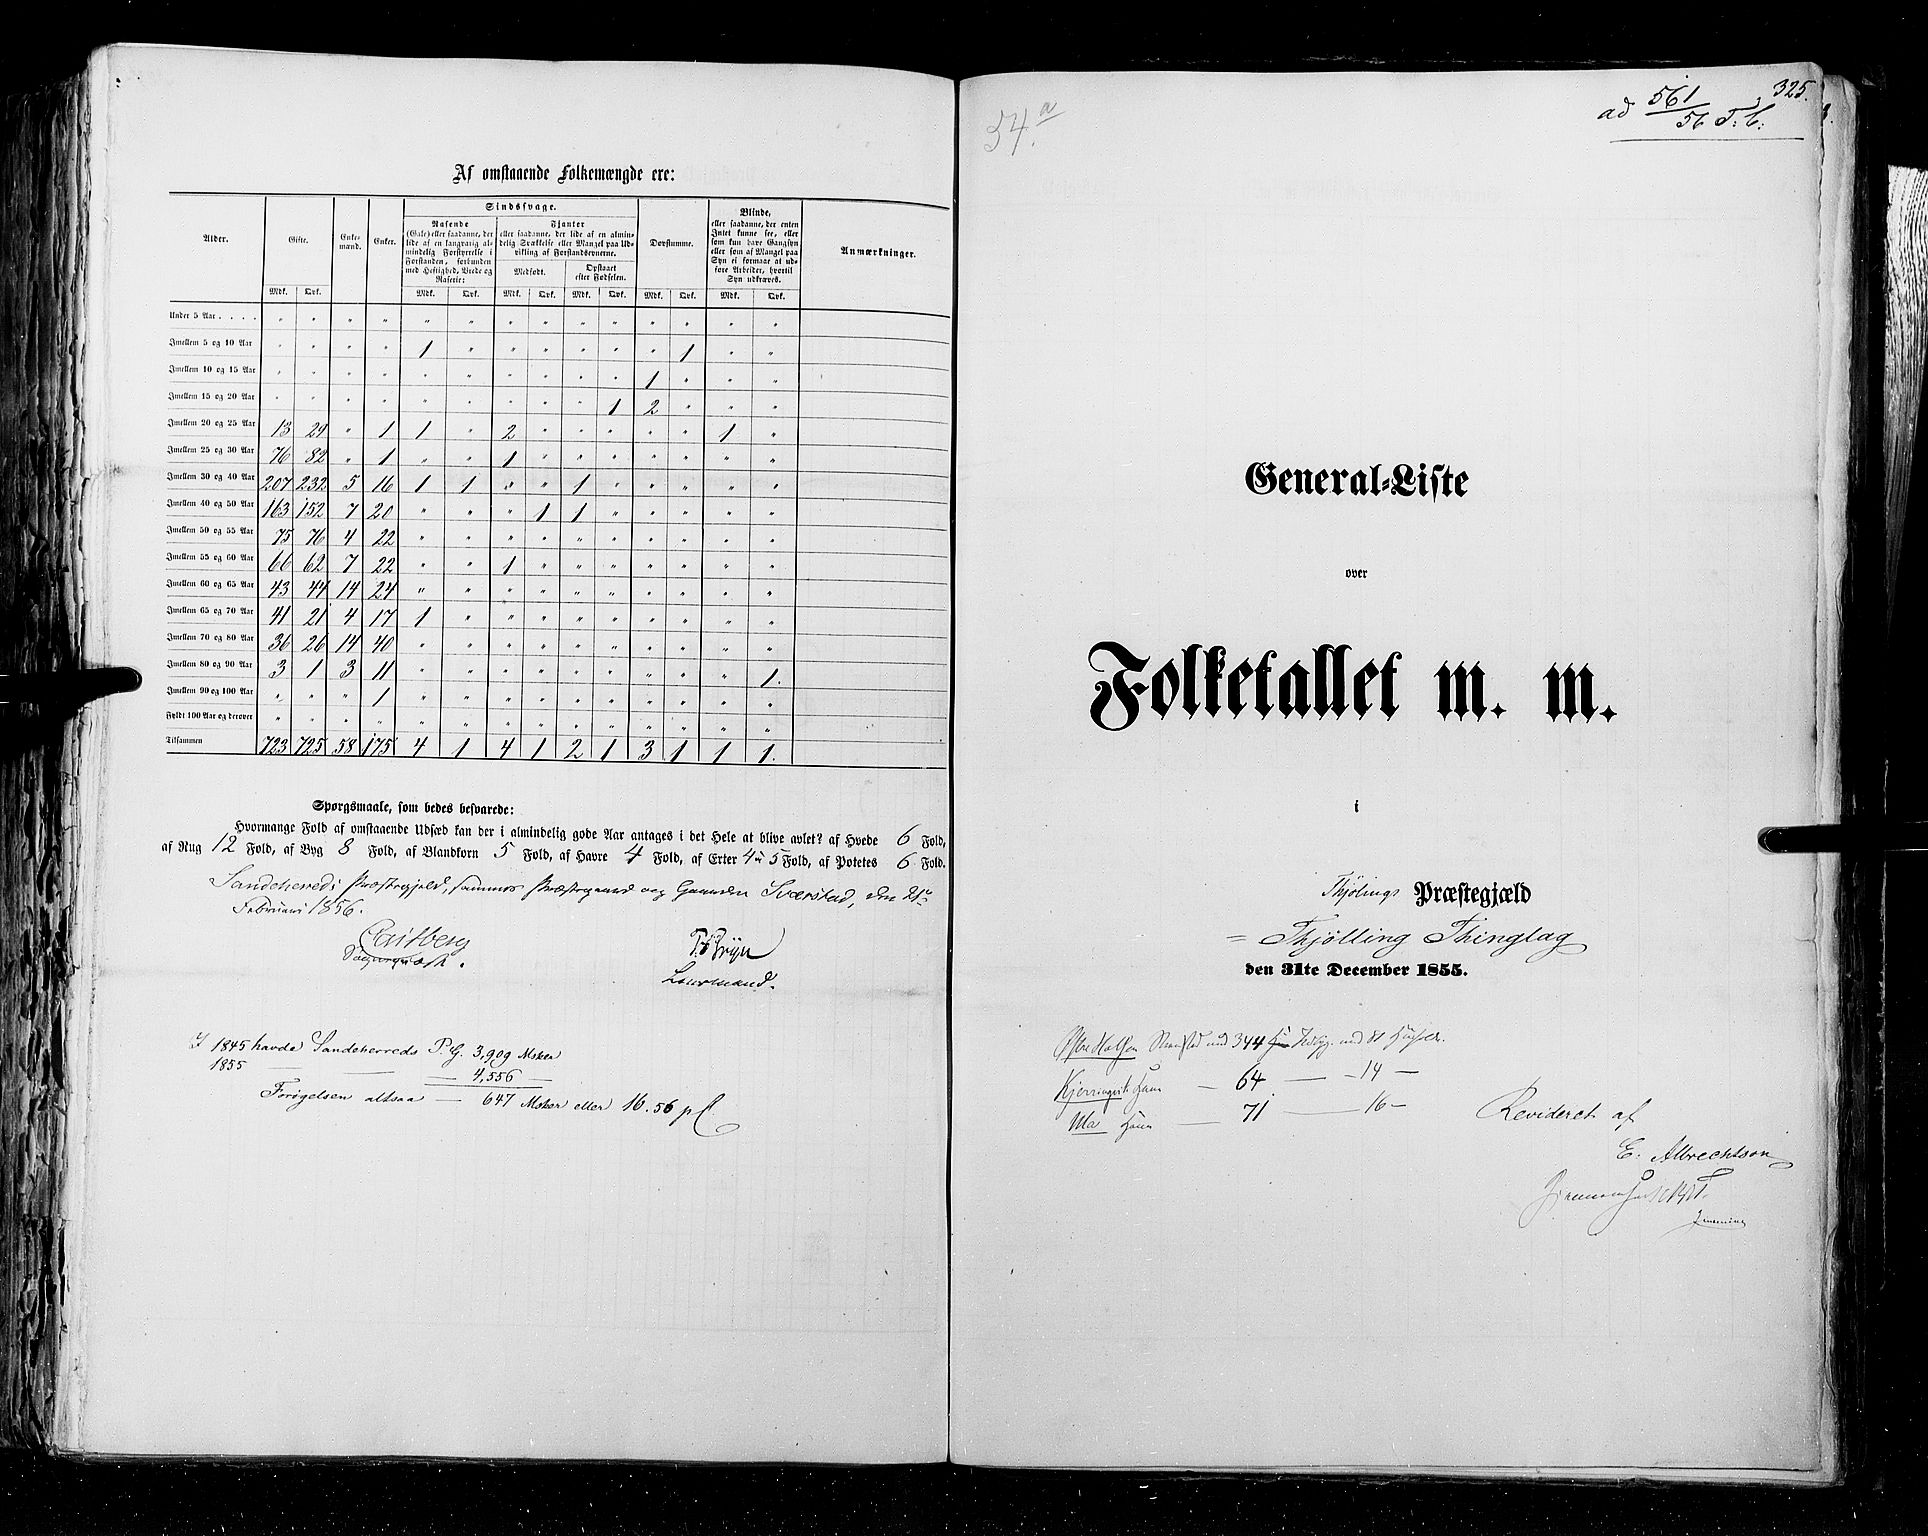 RA, Folketellingen 1855, bind 2: Kristians amt, Buskerud amt og Jarlsberg og Larvik amt, 1855, s. 325